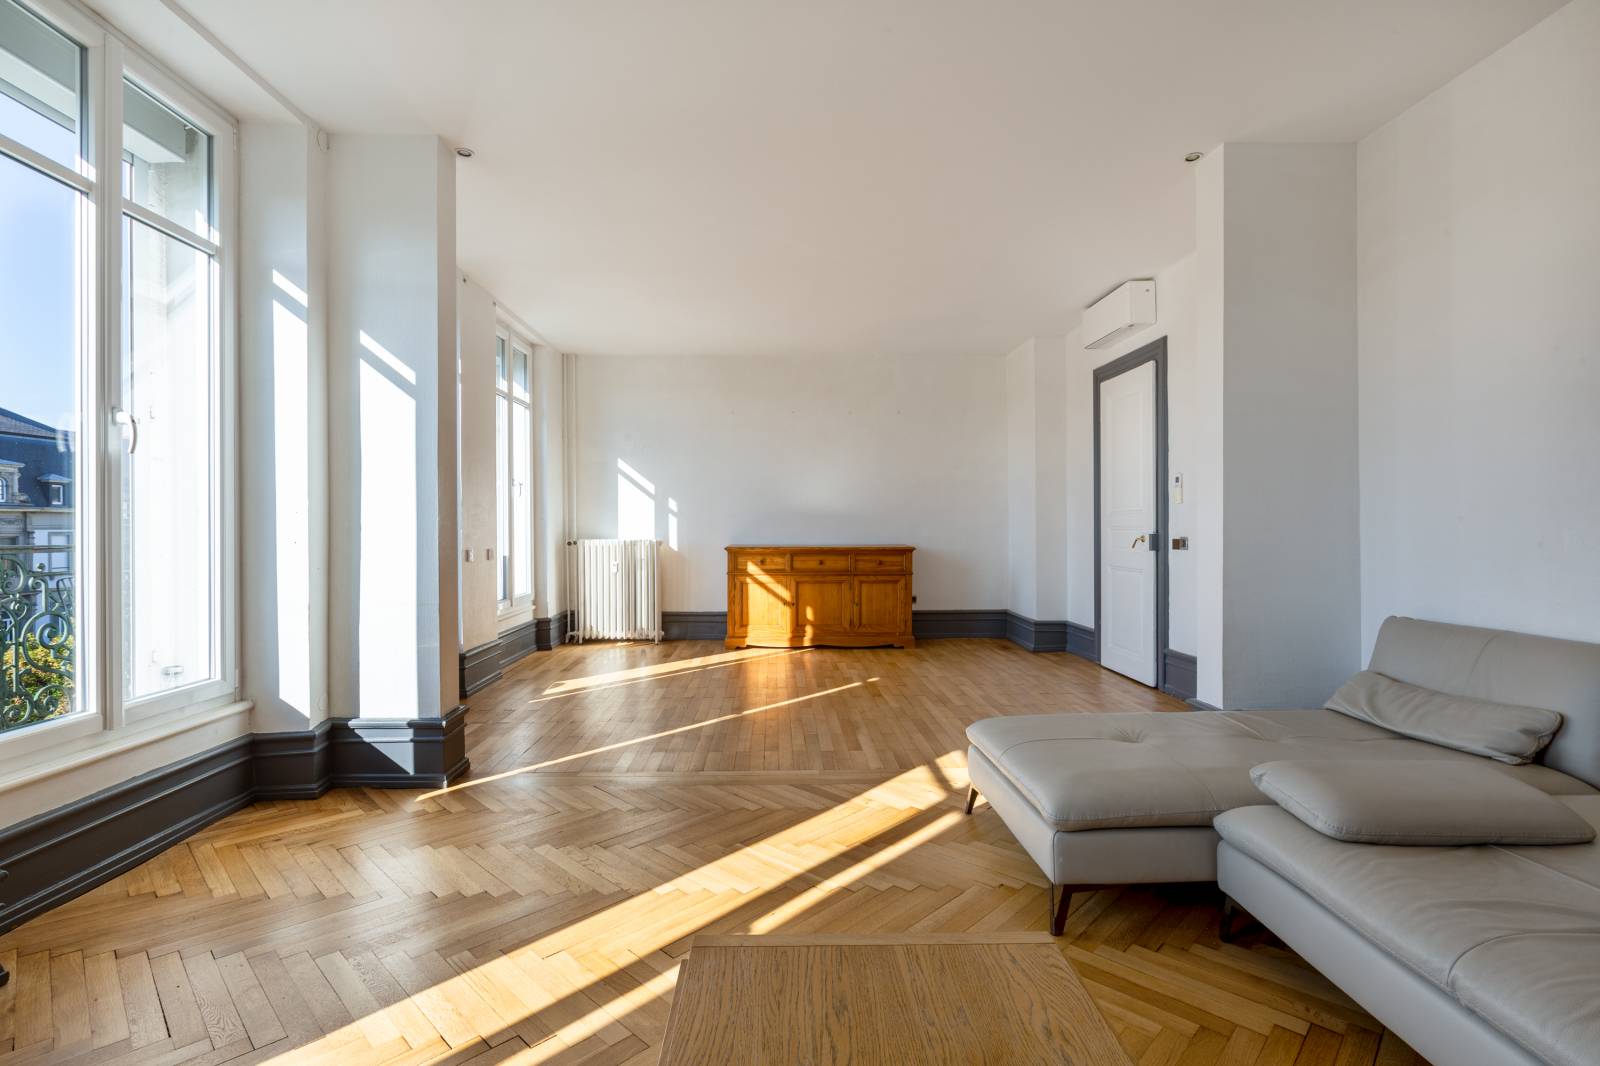 SOUS OFFRE ! Bel appartement 7 pièces avec balcon et ascenseur idéalement situé non loin du Parc de l'Orangerie à Strasbourg 